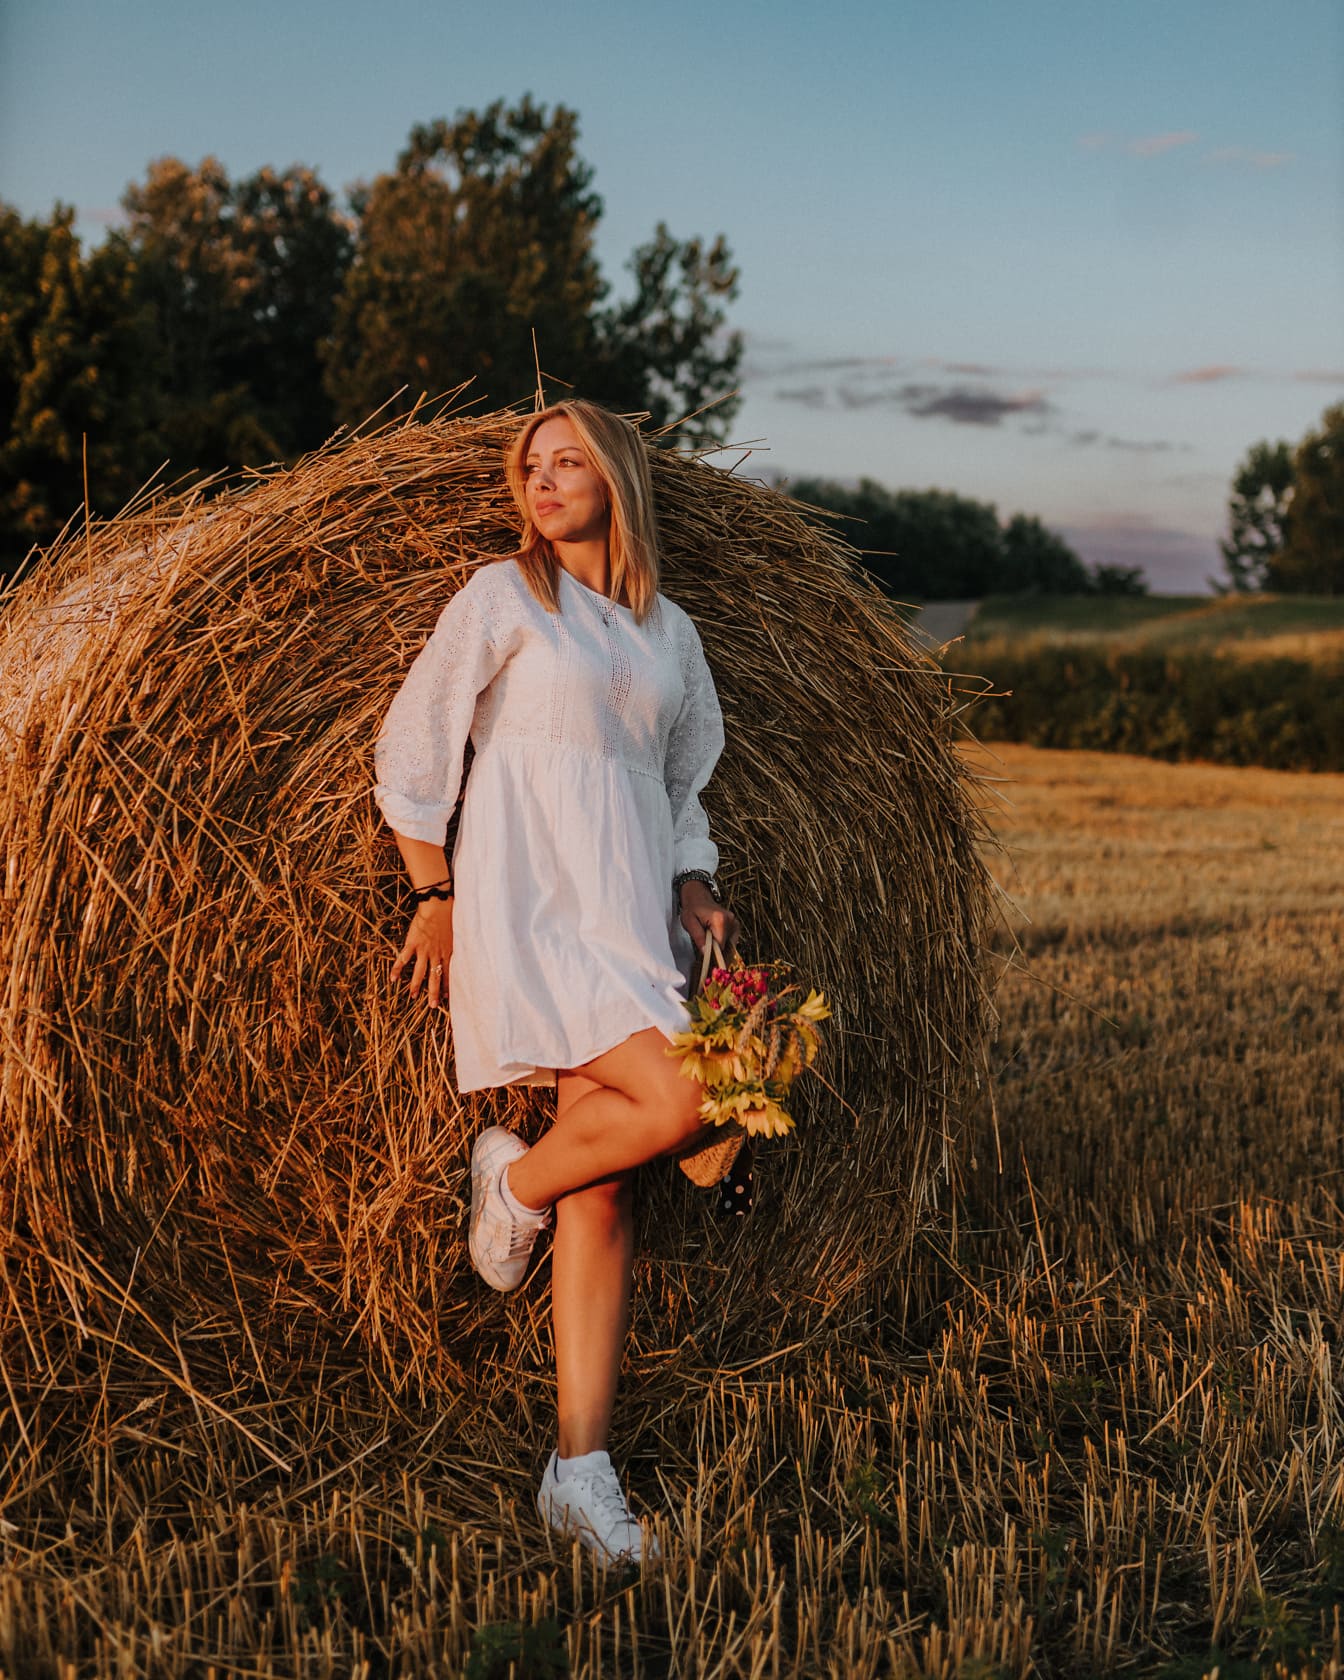 Vidiecka mladá žena v bielom ľudovom odeve opierajúca sa o balík sena na pšeničnom poli